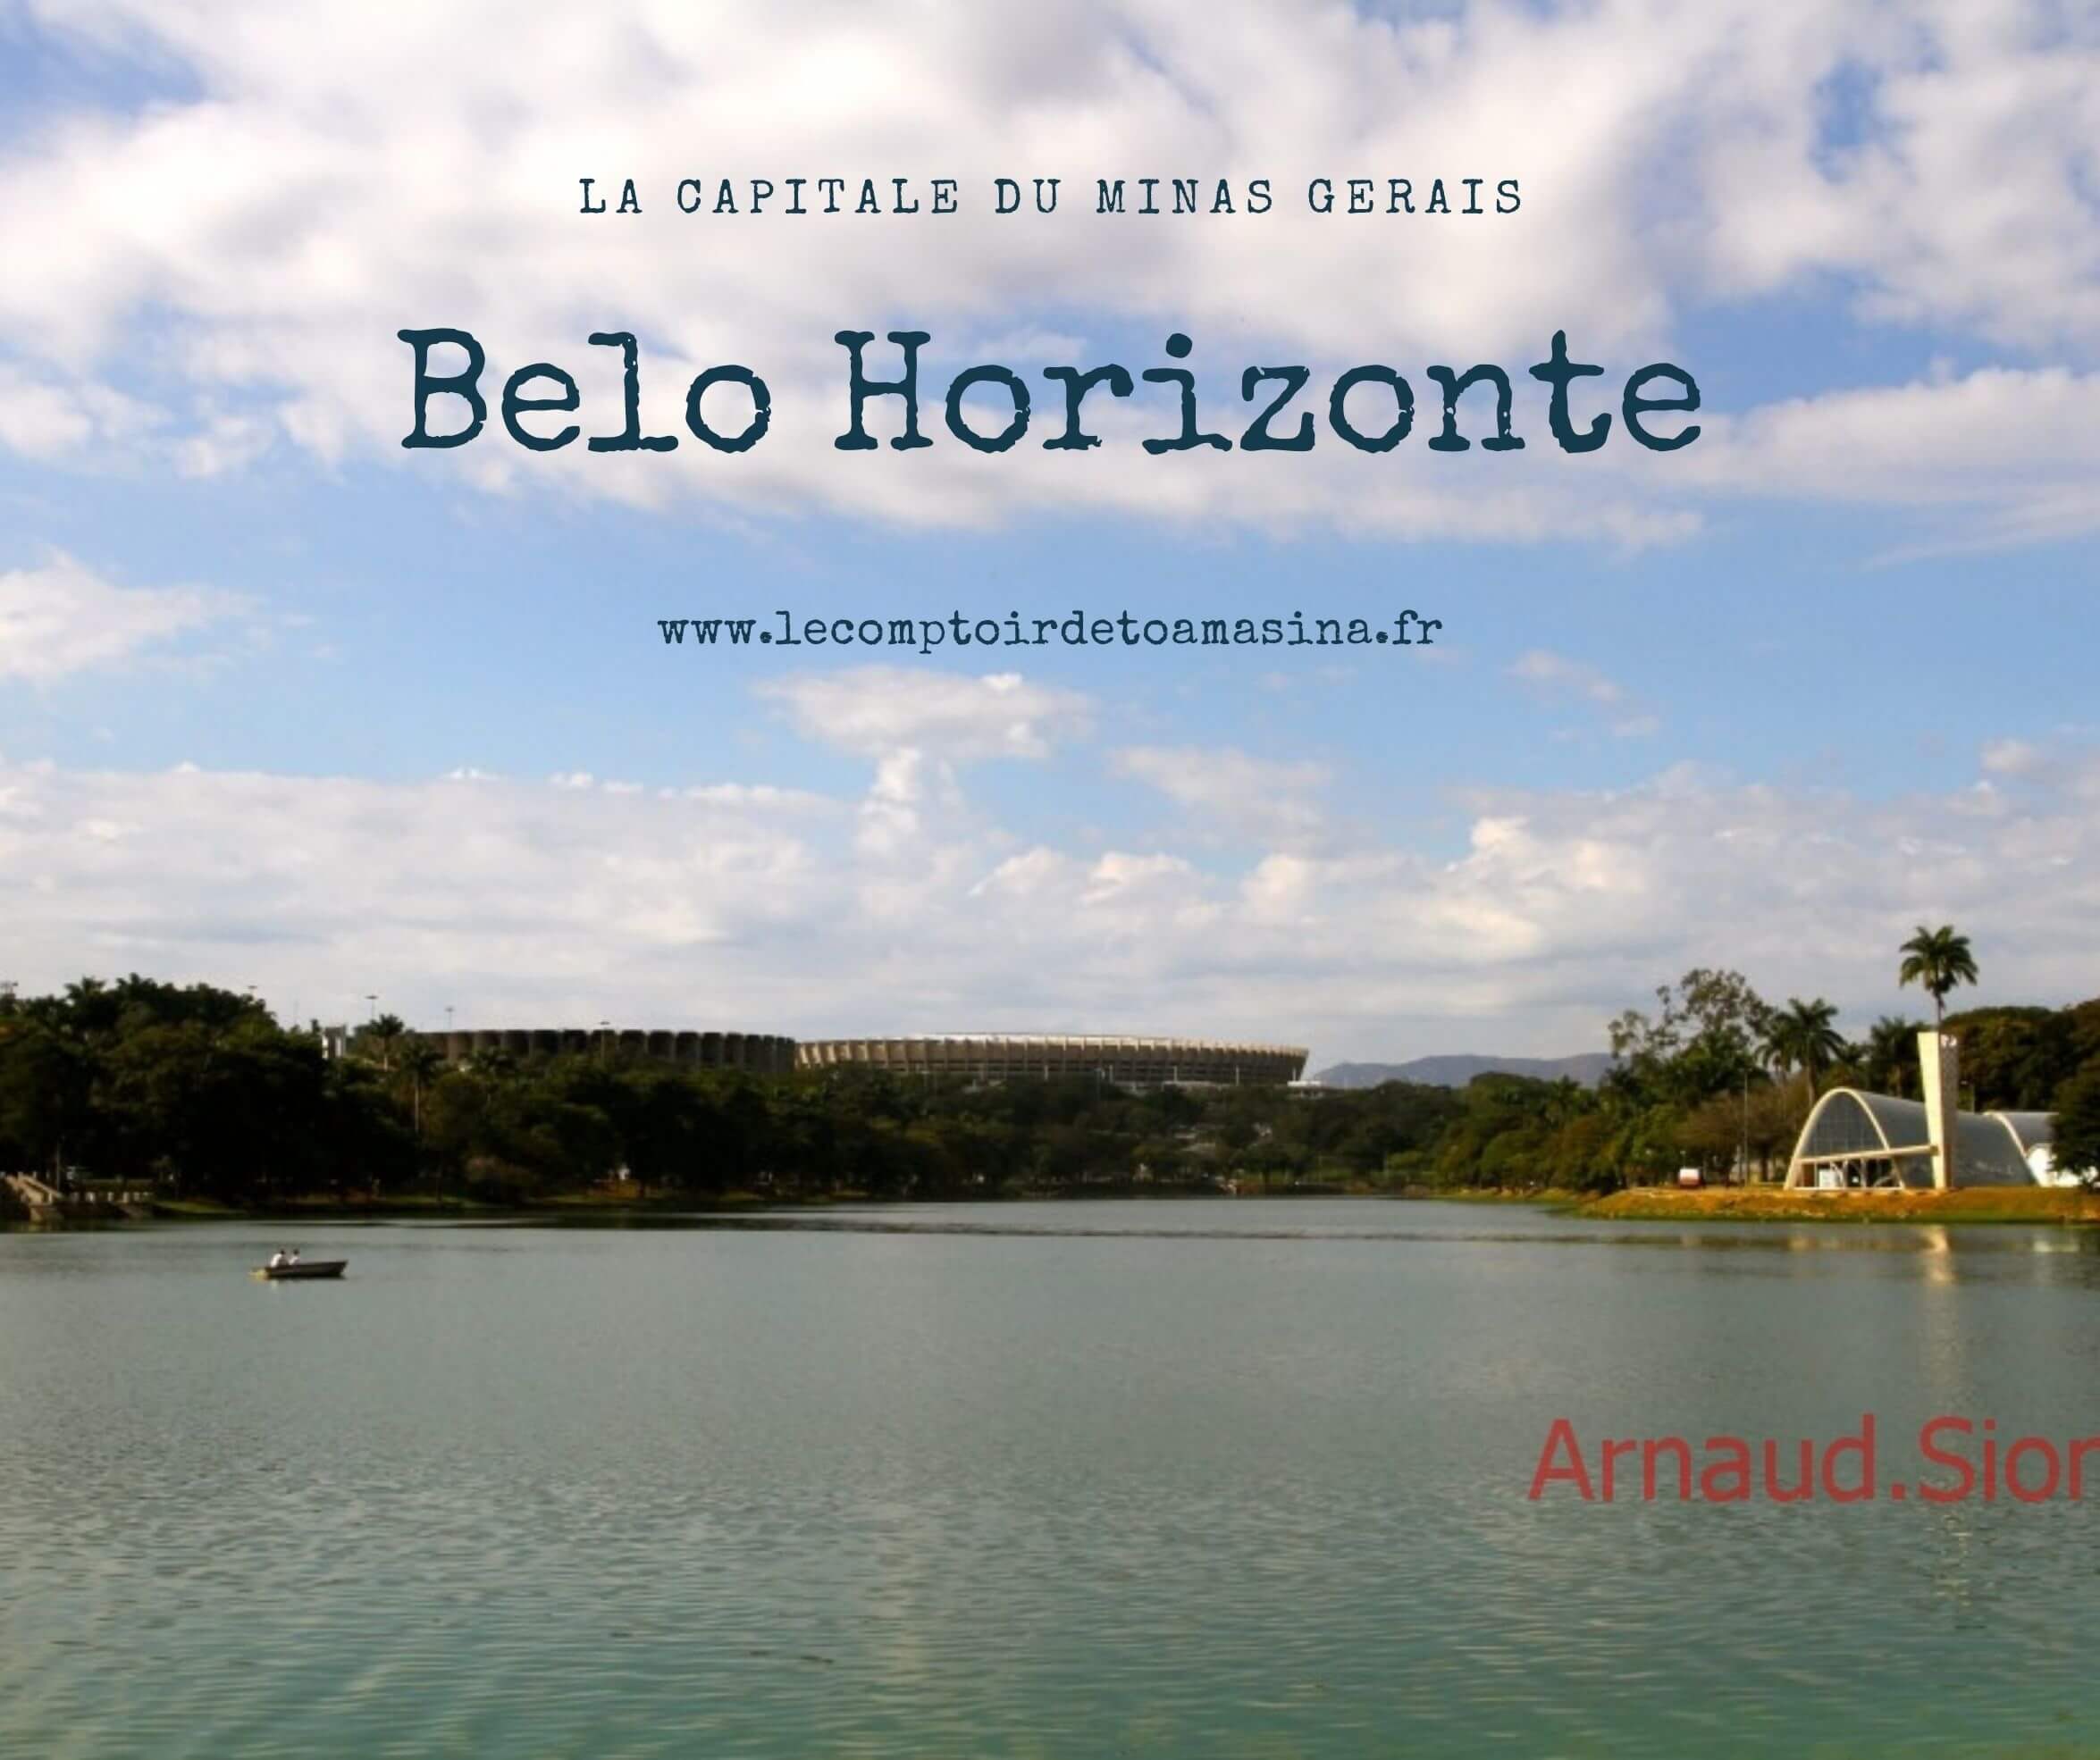 Visiter Belo Horizonte - La capitale du Minas Gerais